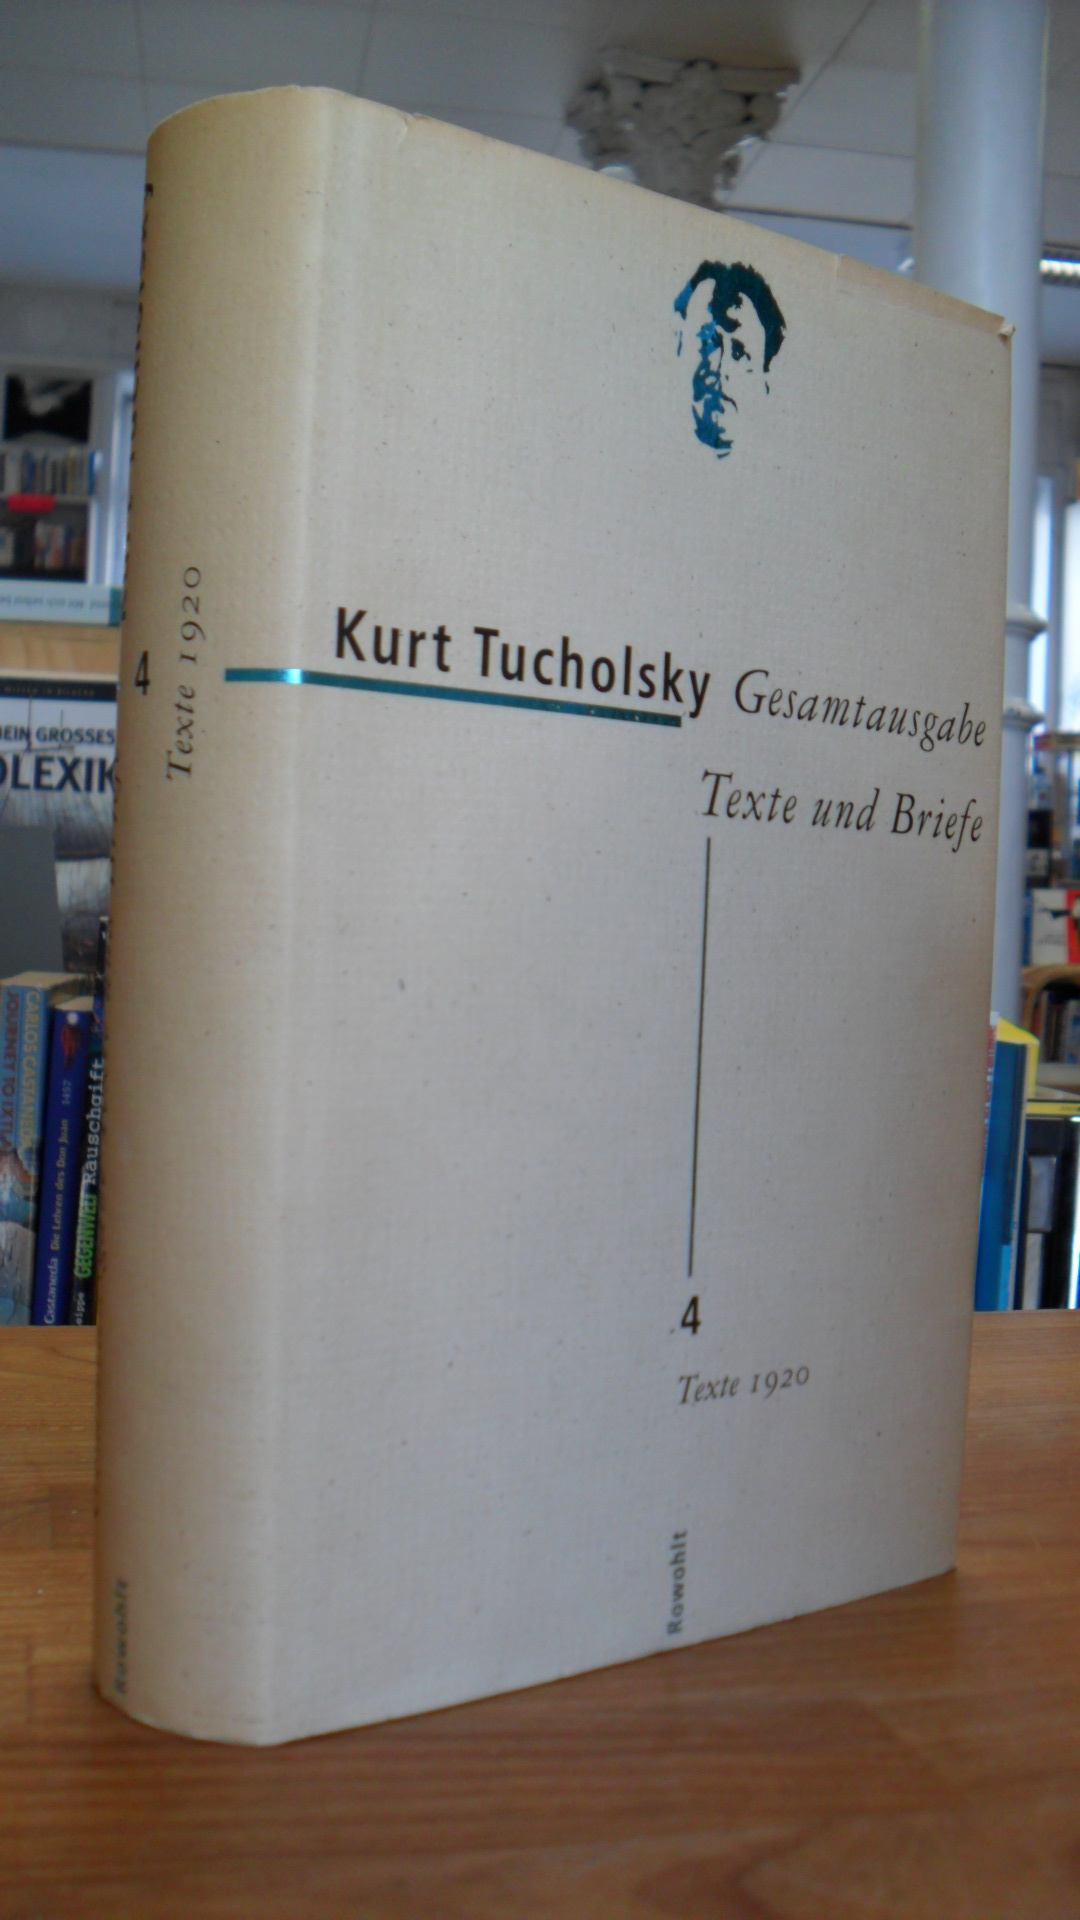 Tucholsky, Gesamtausgabe – Texte und Briefe -Band 4: Texte 1920,